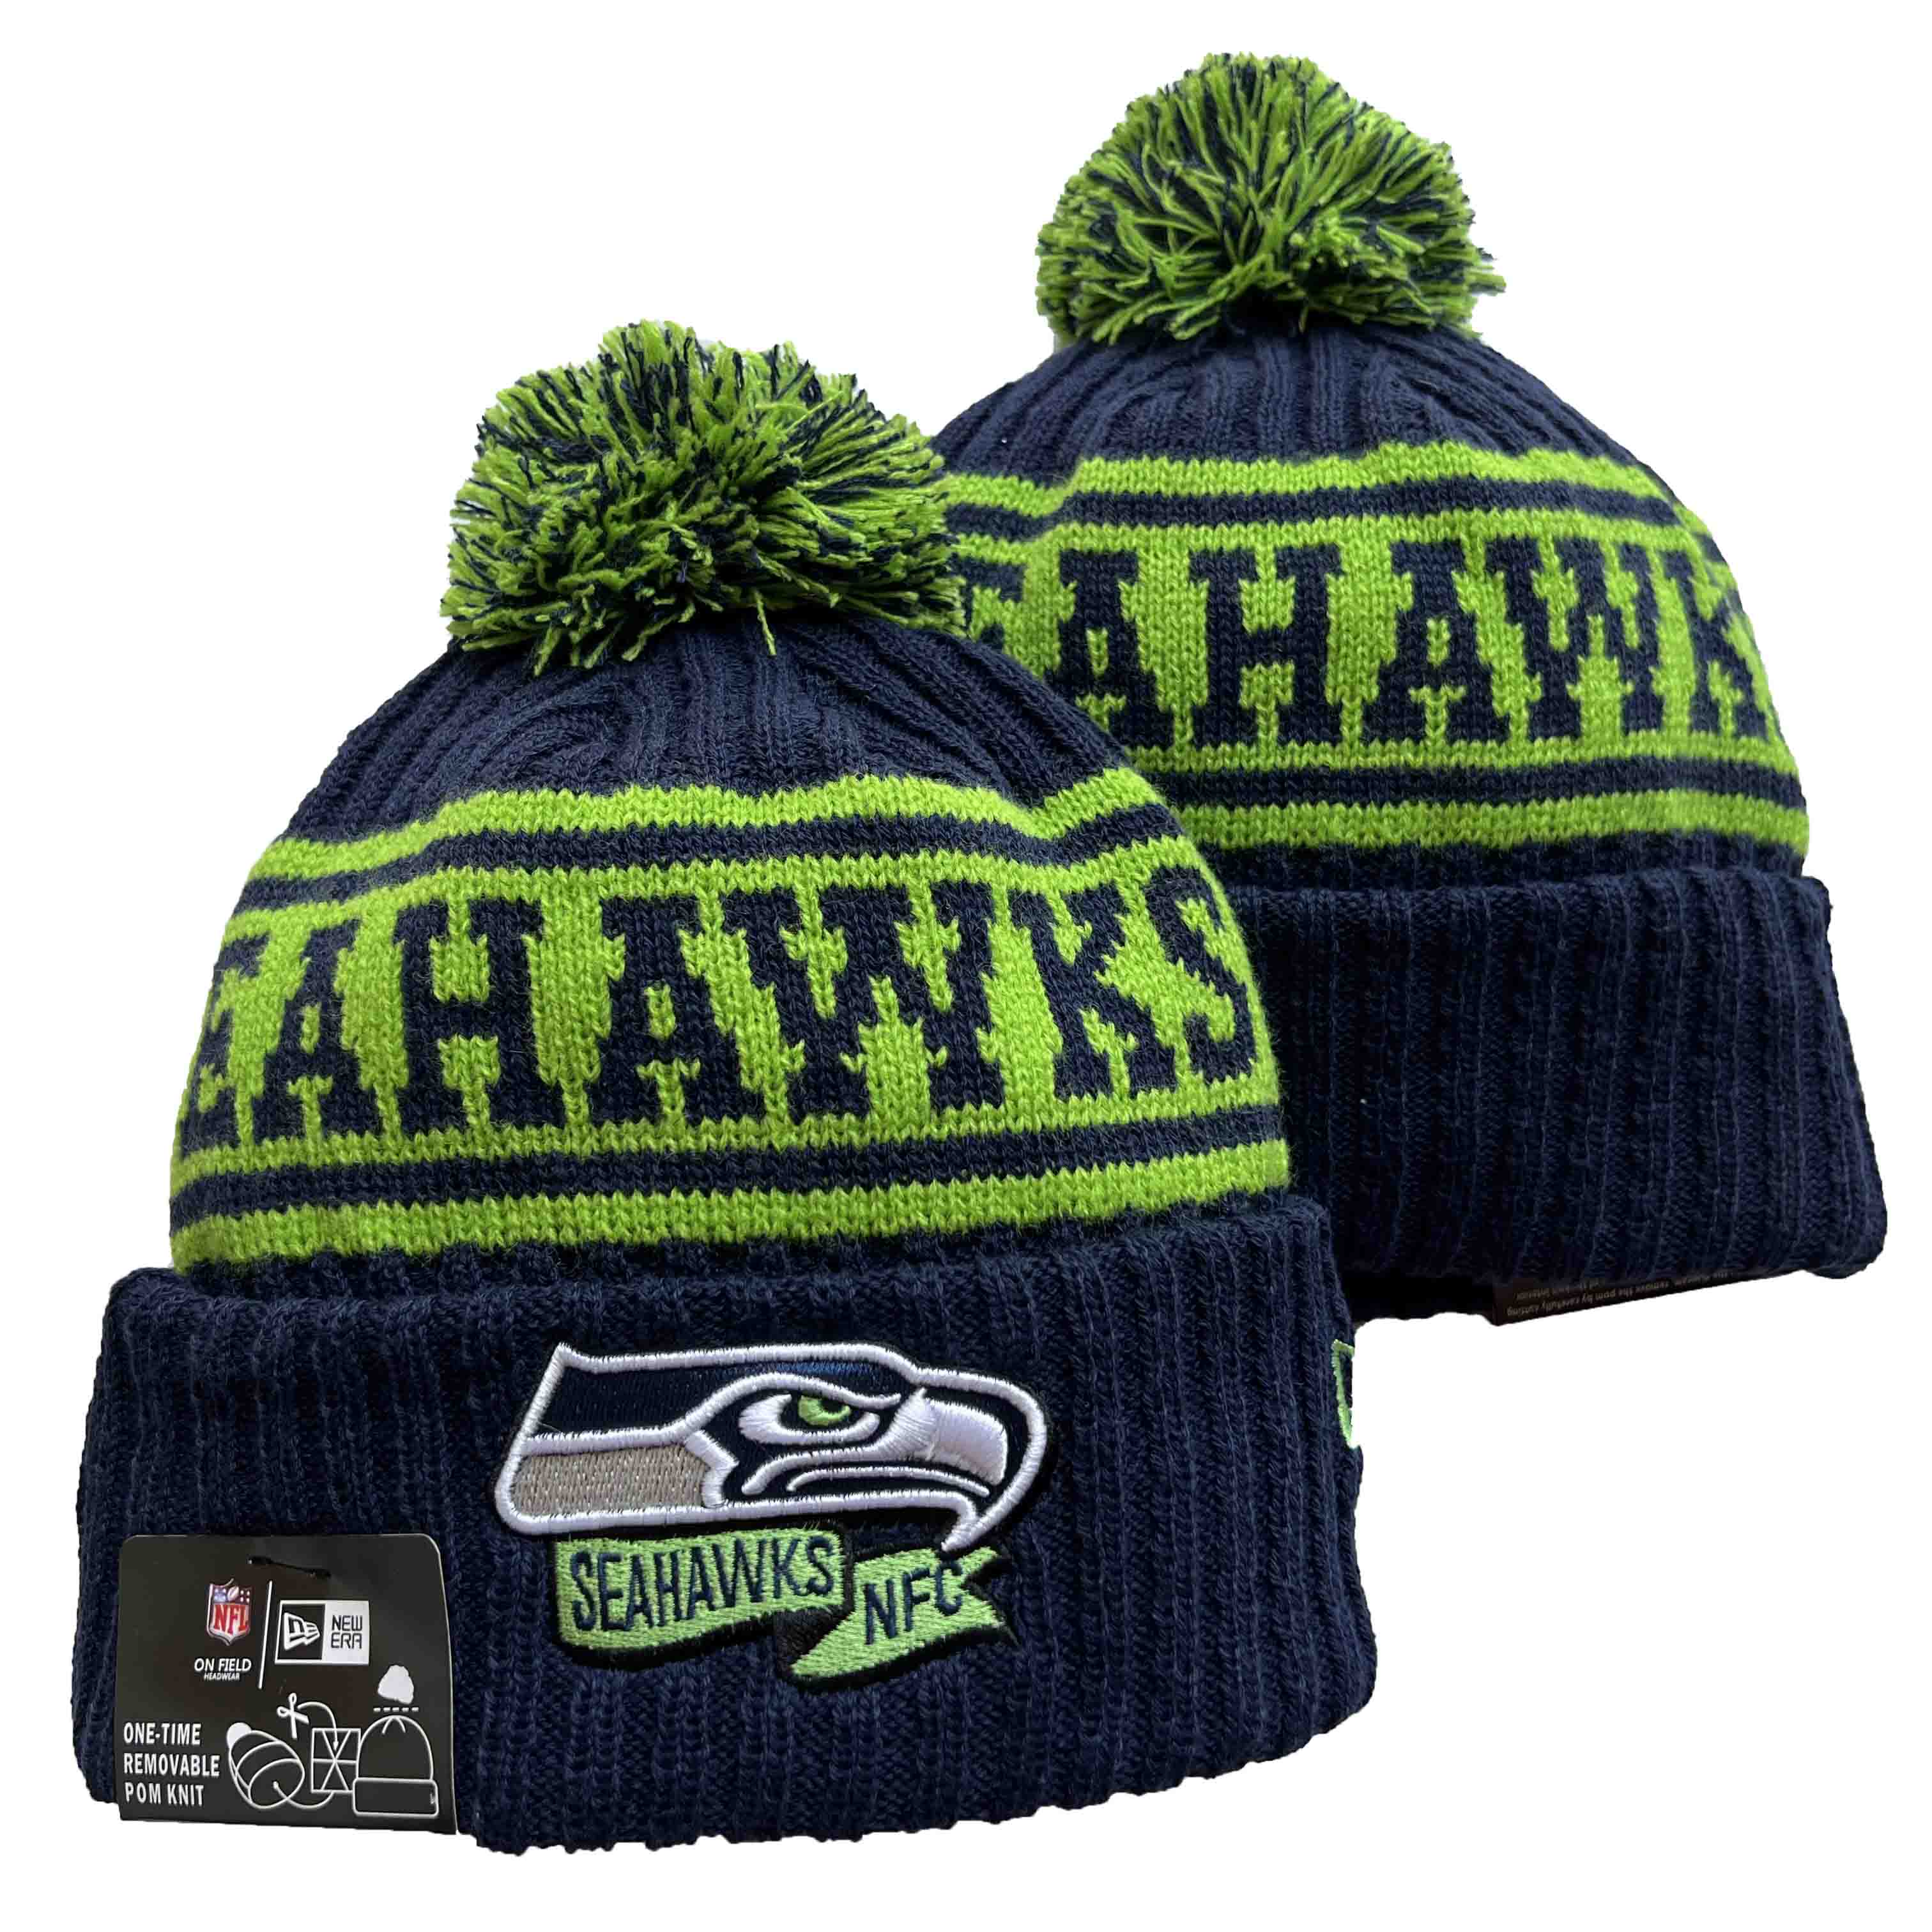 NFL Seattle Seahawks Beanies Knit Hats-YD1223